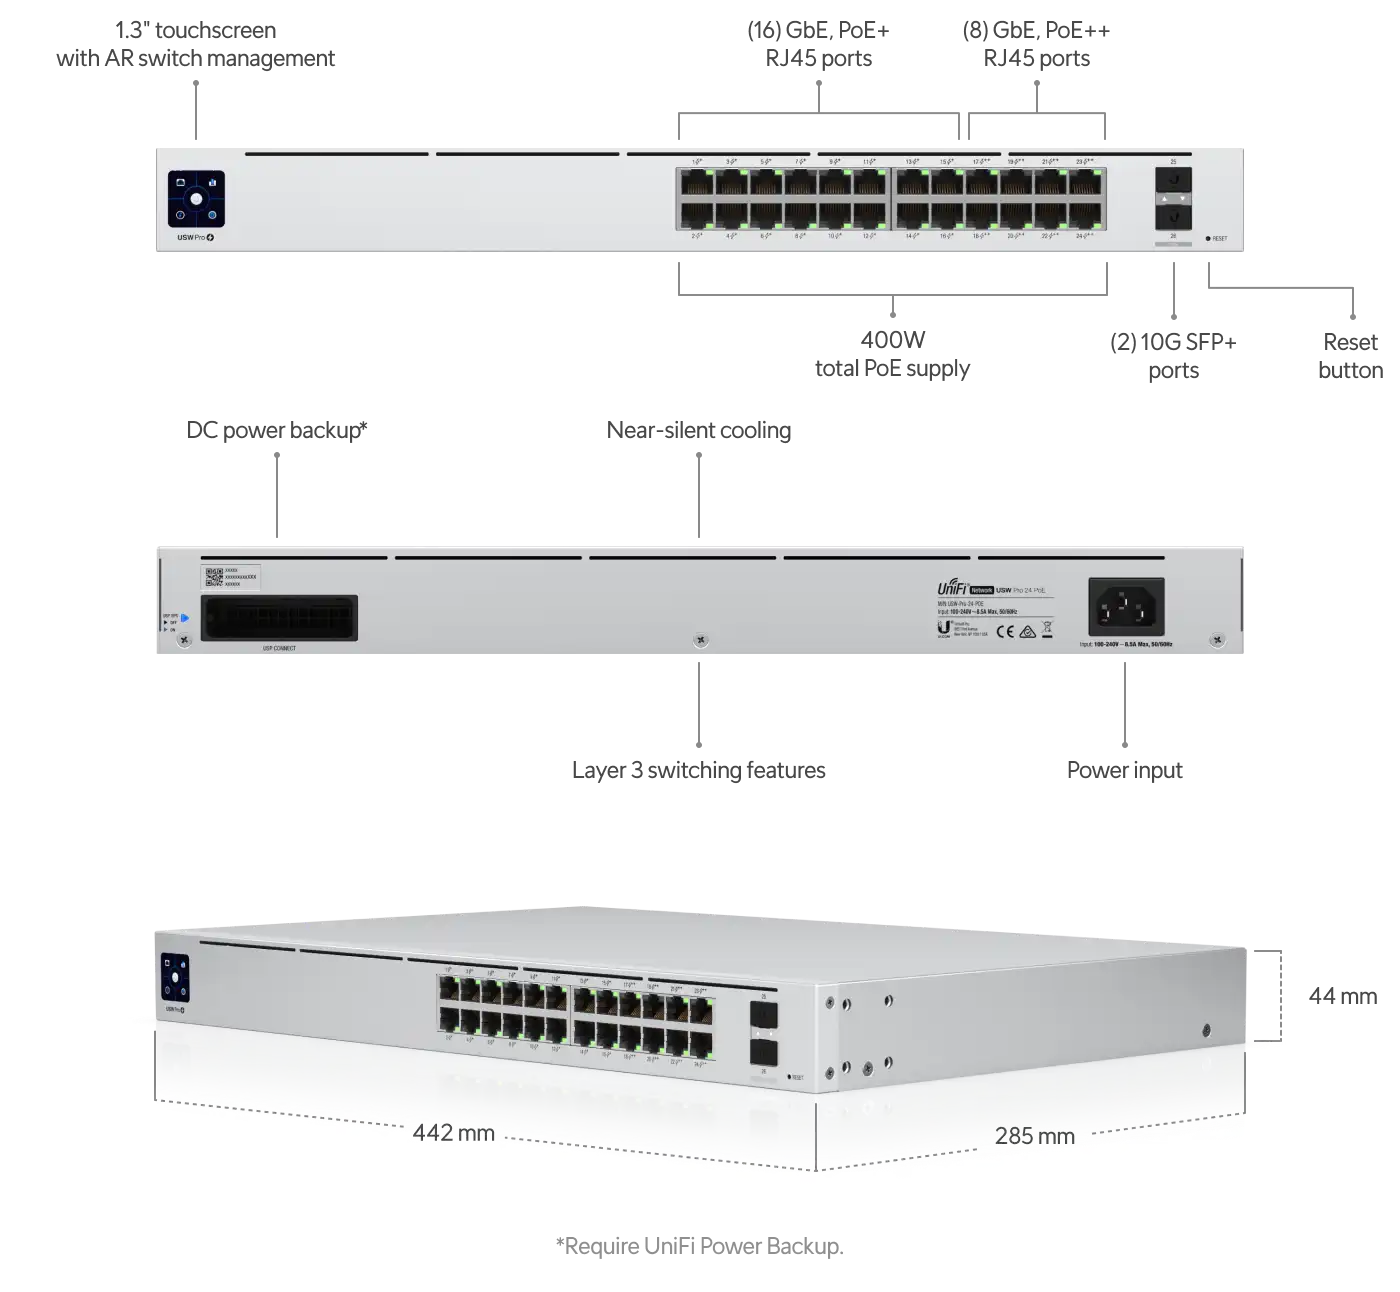 Commutateur UniFi 48 ports Maroc Ubiquiti USW-PRO-48-POE Maroc Switch 48 ports Gigabit PoE+ Ubiquiti USW-PRO-48-POE, Chaque port offre un débit non bloquant de 88 Gb/s avec une capacité de commutation de 176 Gb/s et un taux de transfert de 130,94 Mpps. Quatre ports SFP+ 10 Gbit/s sont disponibles pour une extension supplémentaire du réseau à l'aide d'appareils compatibles.